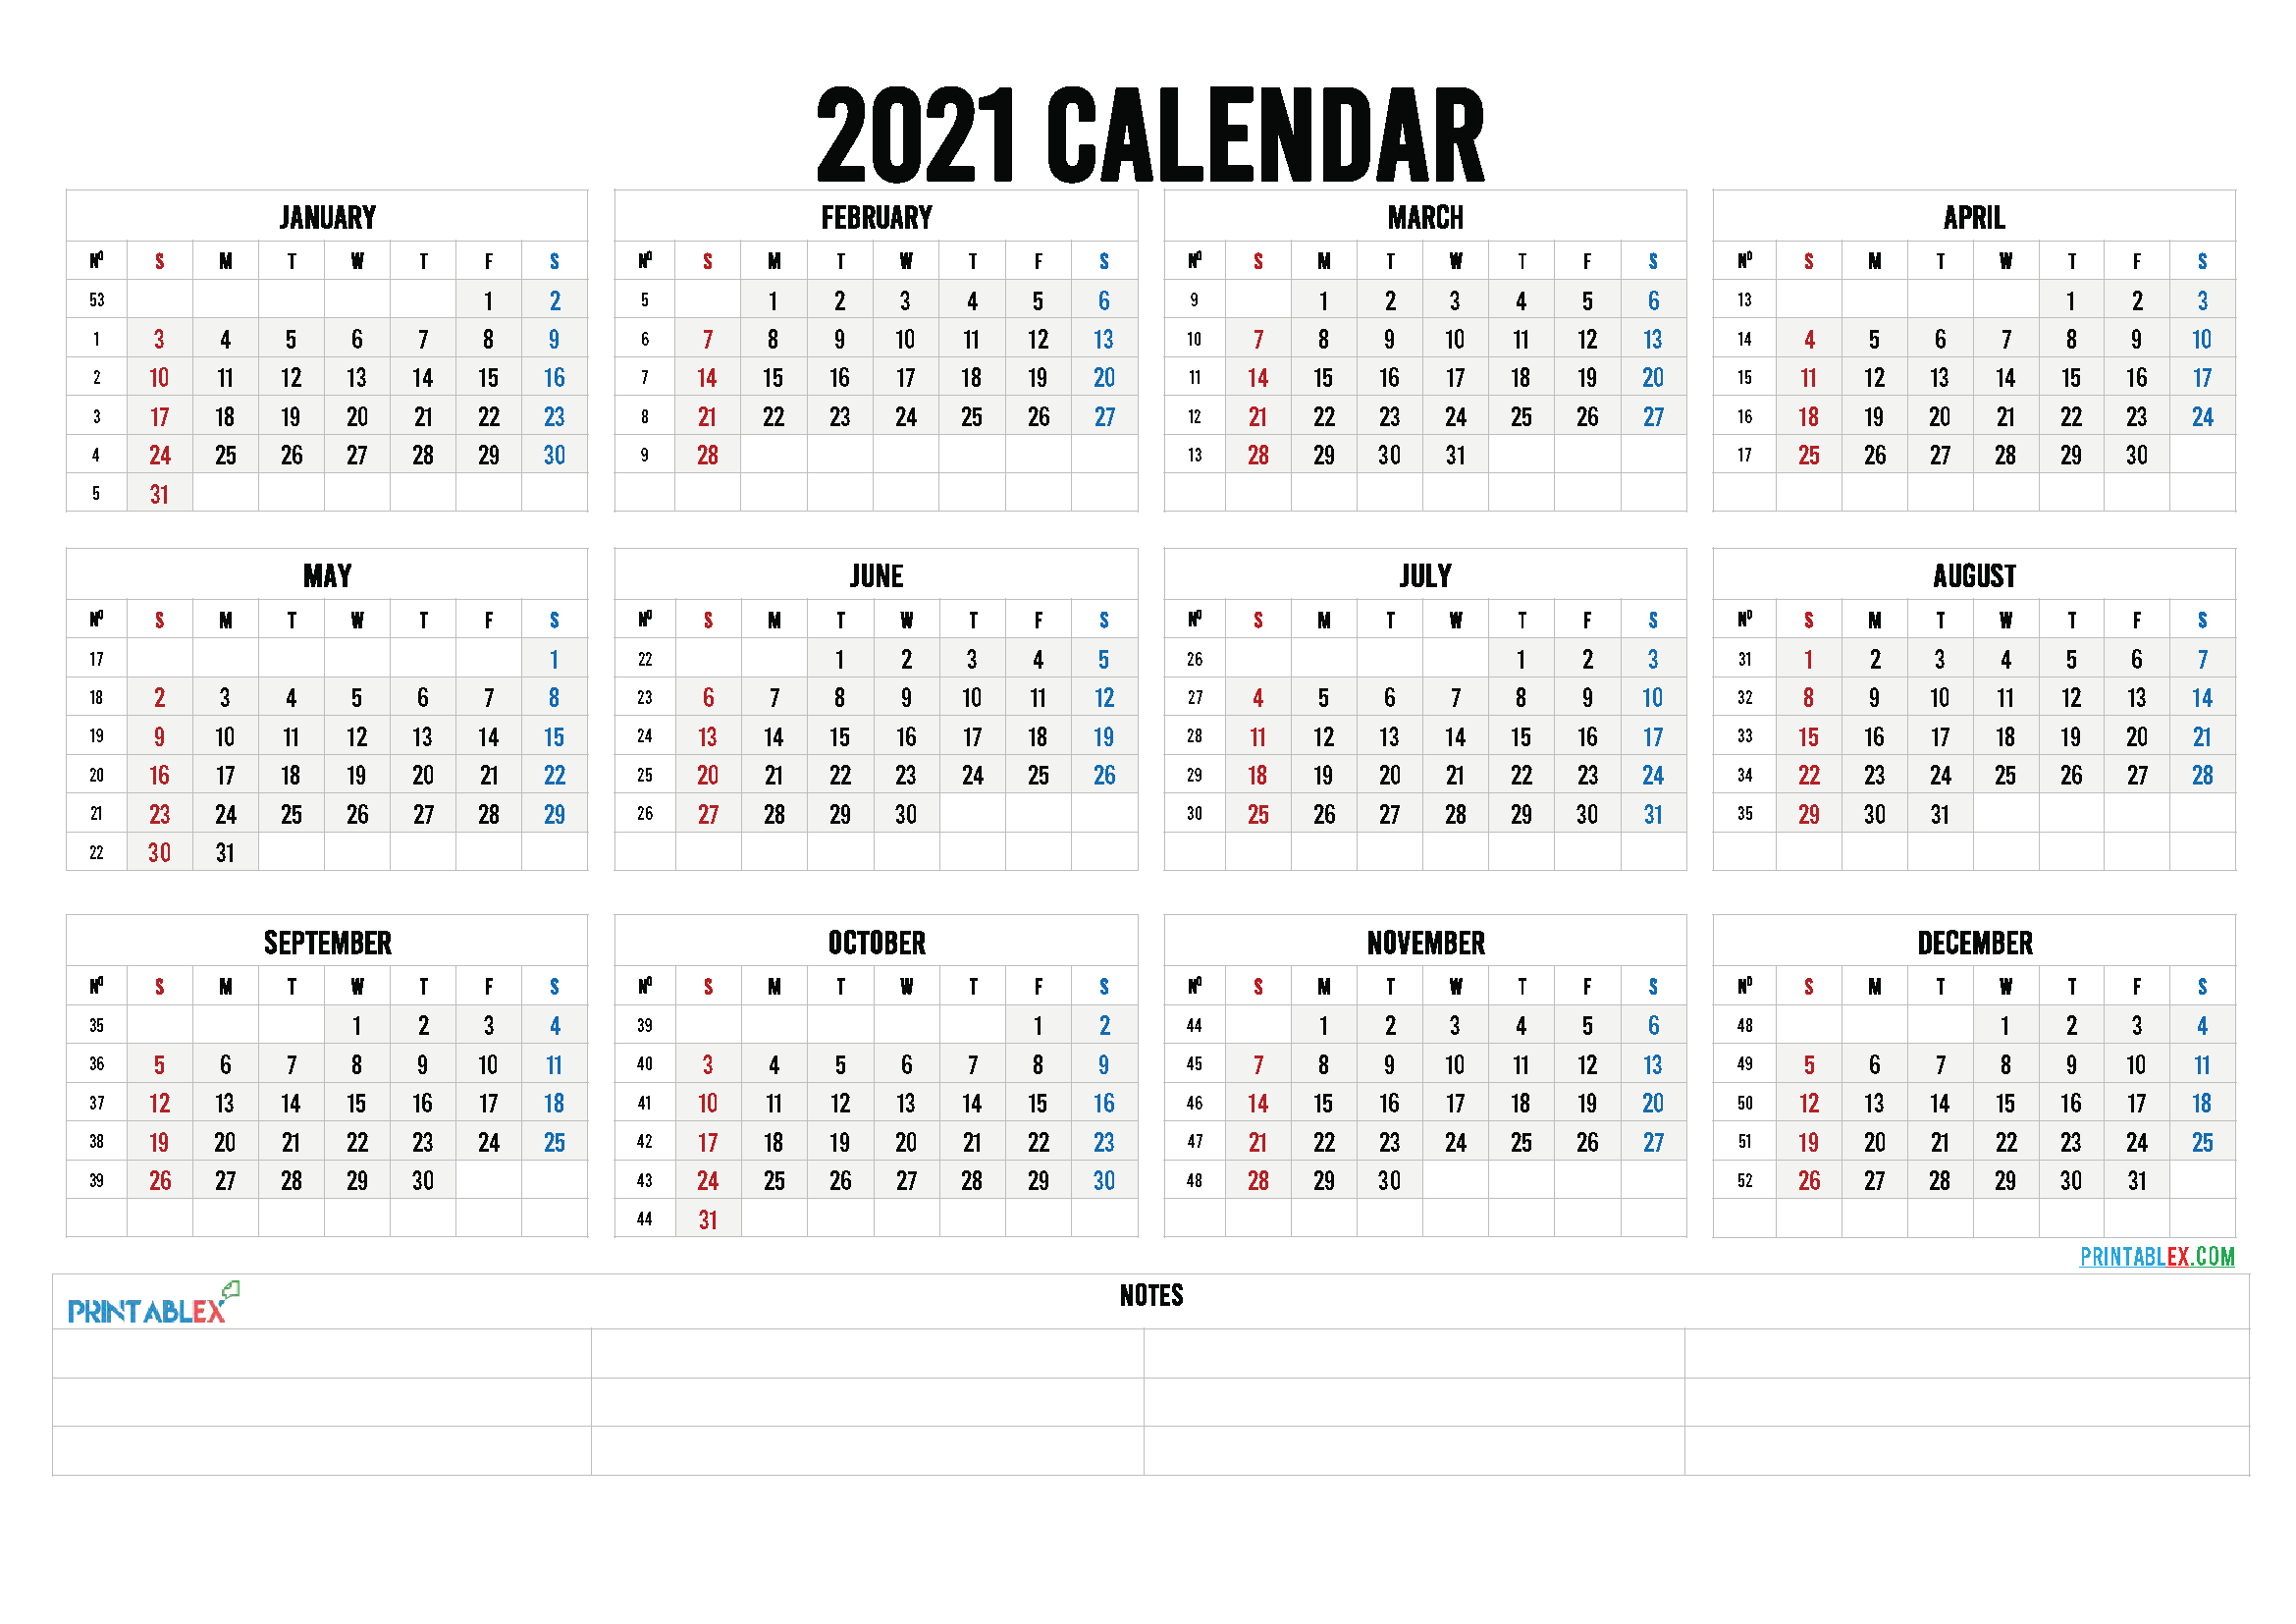 Printable 2021 Calendar by Month